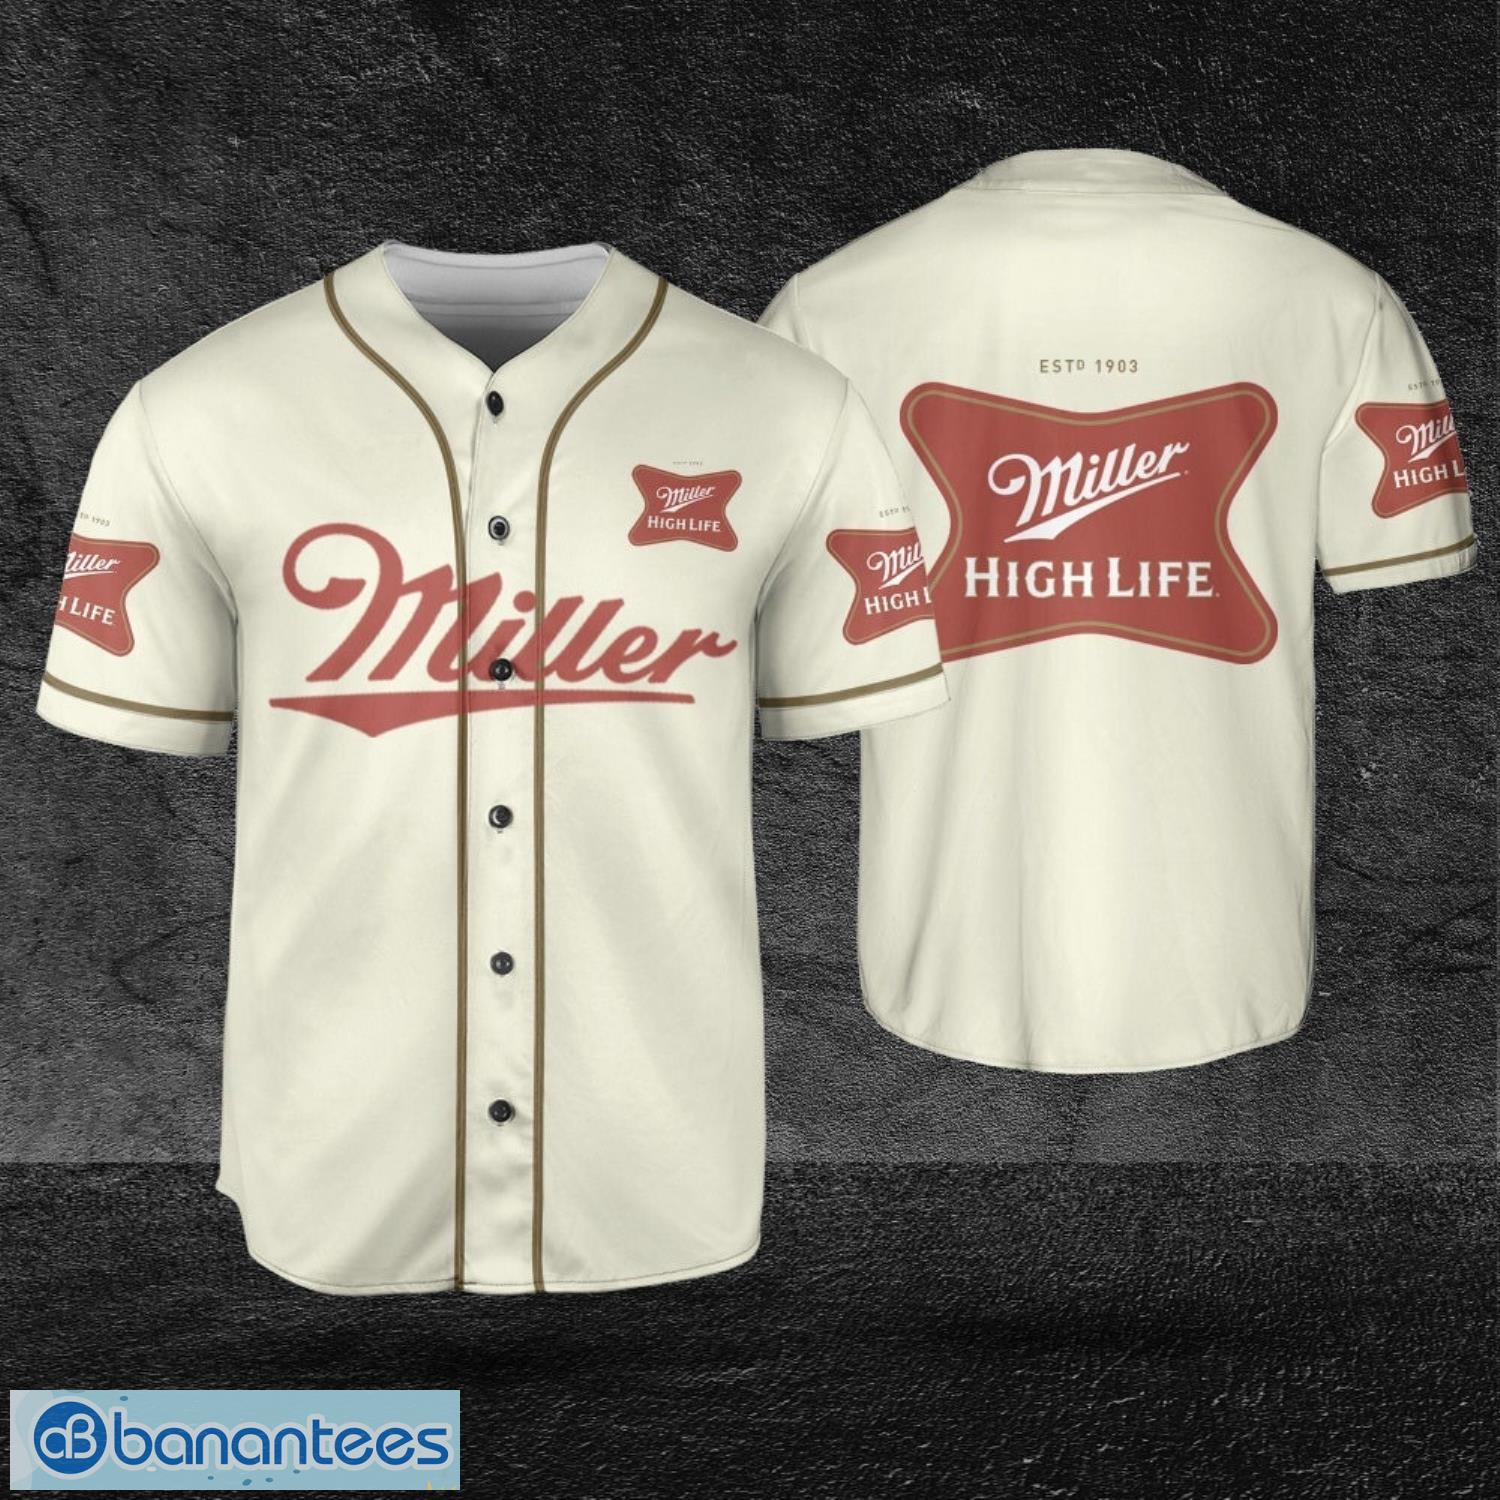 Miller Lite White Baseball Jersey Shirt, Jersey gift For Men